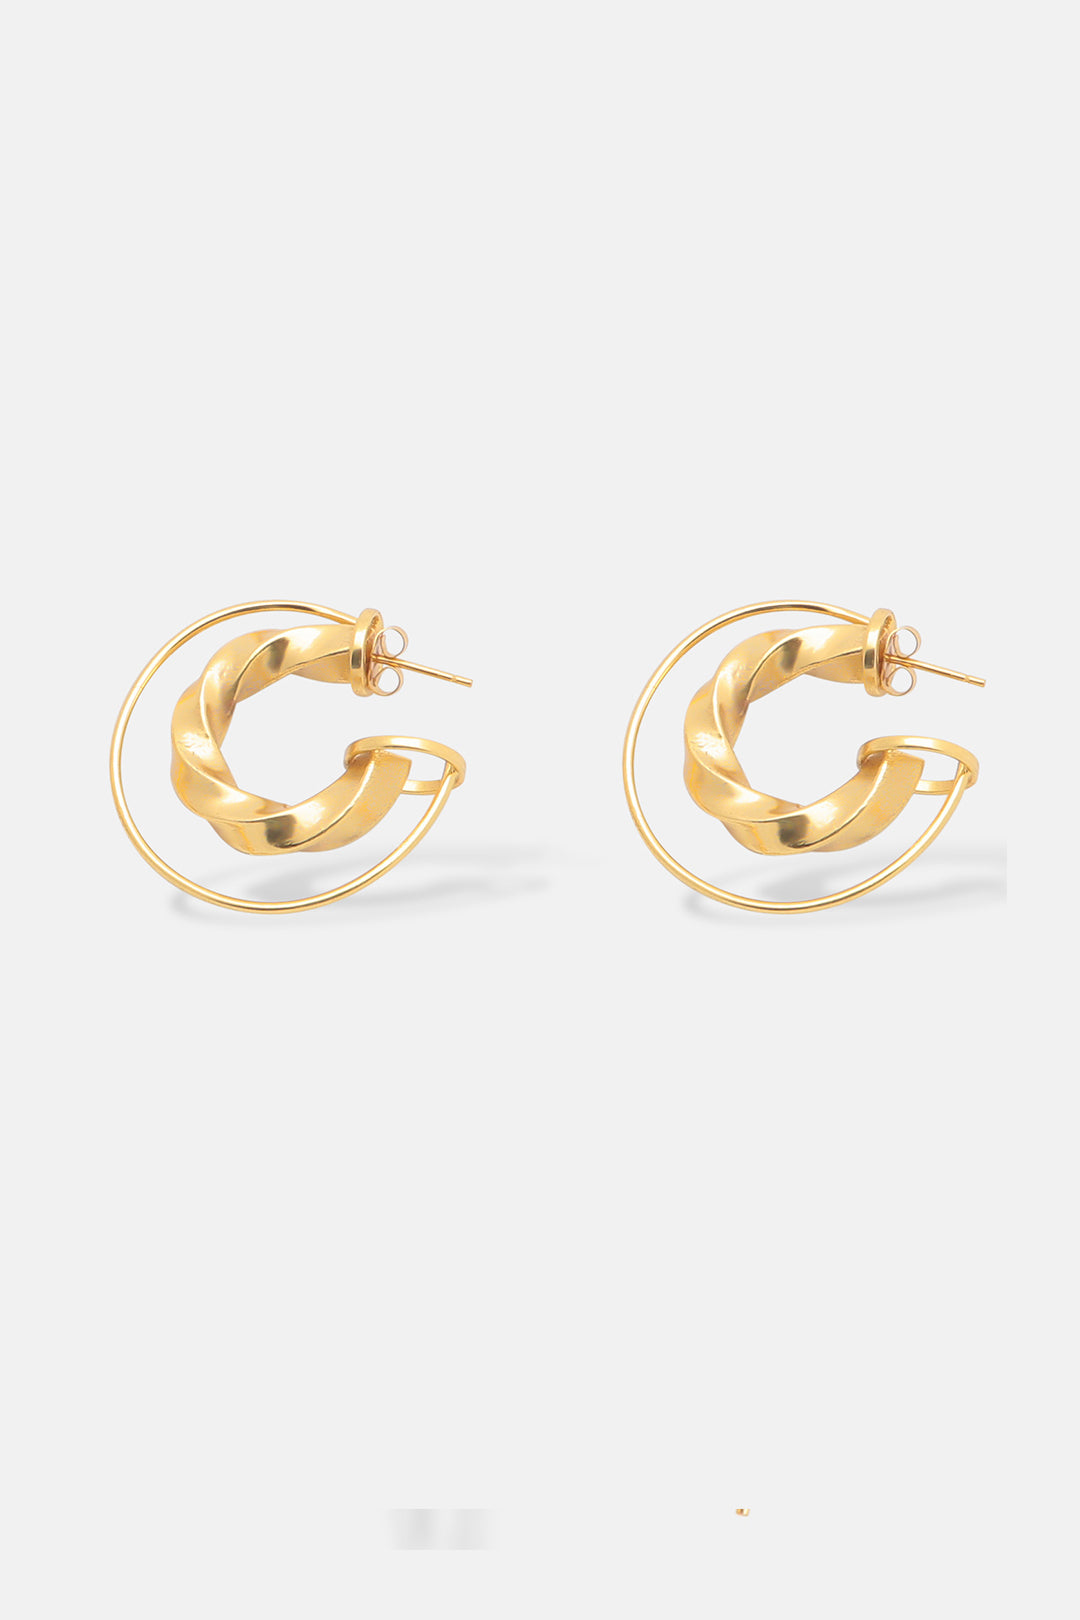 Double Orbit Sculptural Medium Hoop Earrings Mamour Paris Jewelry